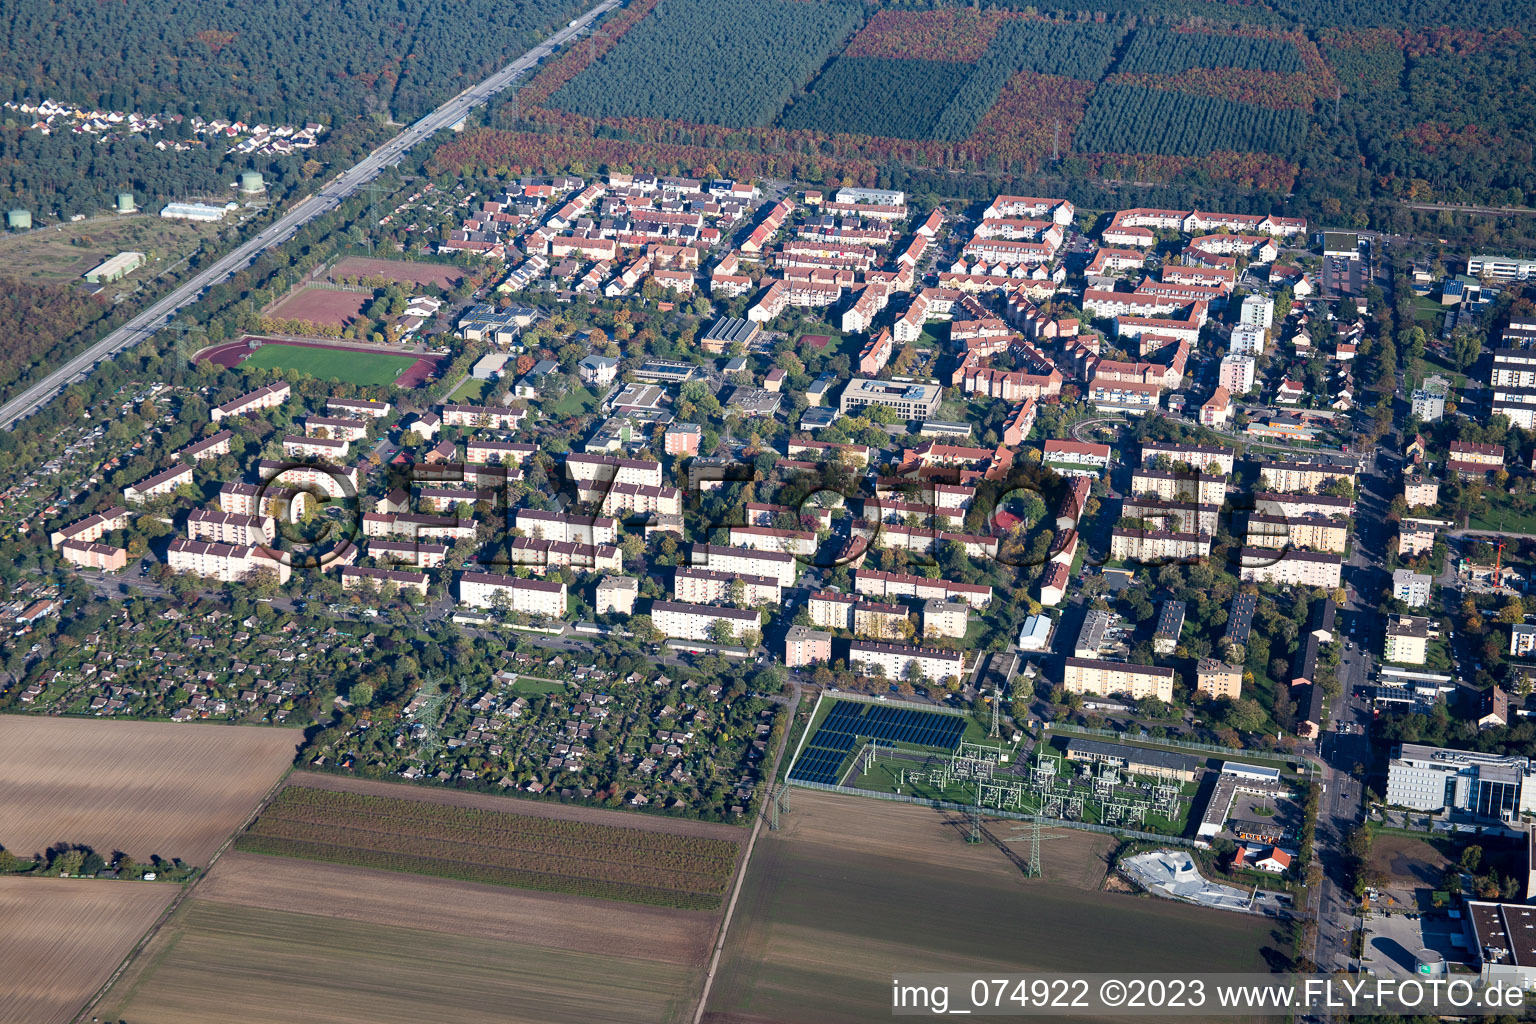 Vue aérienne de Quartier Schönau in Mannheim dans le département Bade-Wurtemberg, Allemagne